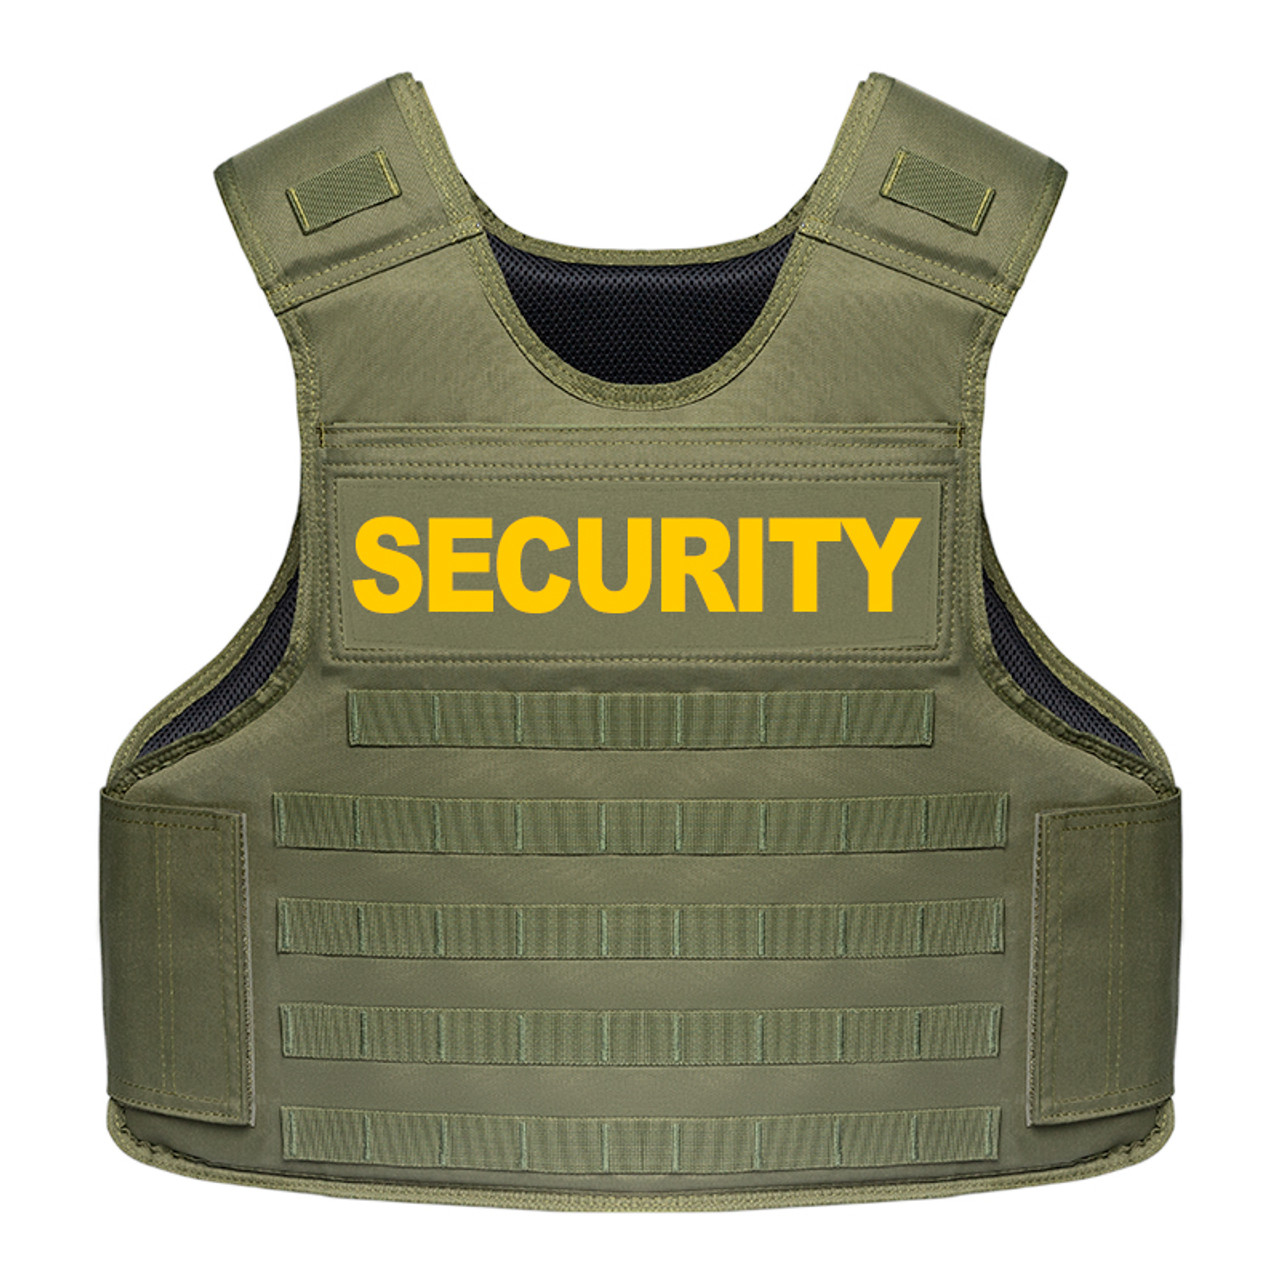 OD Green Security Vest